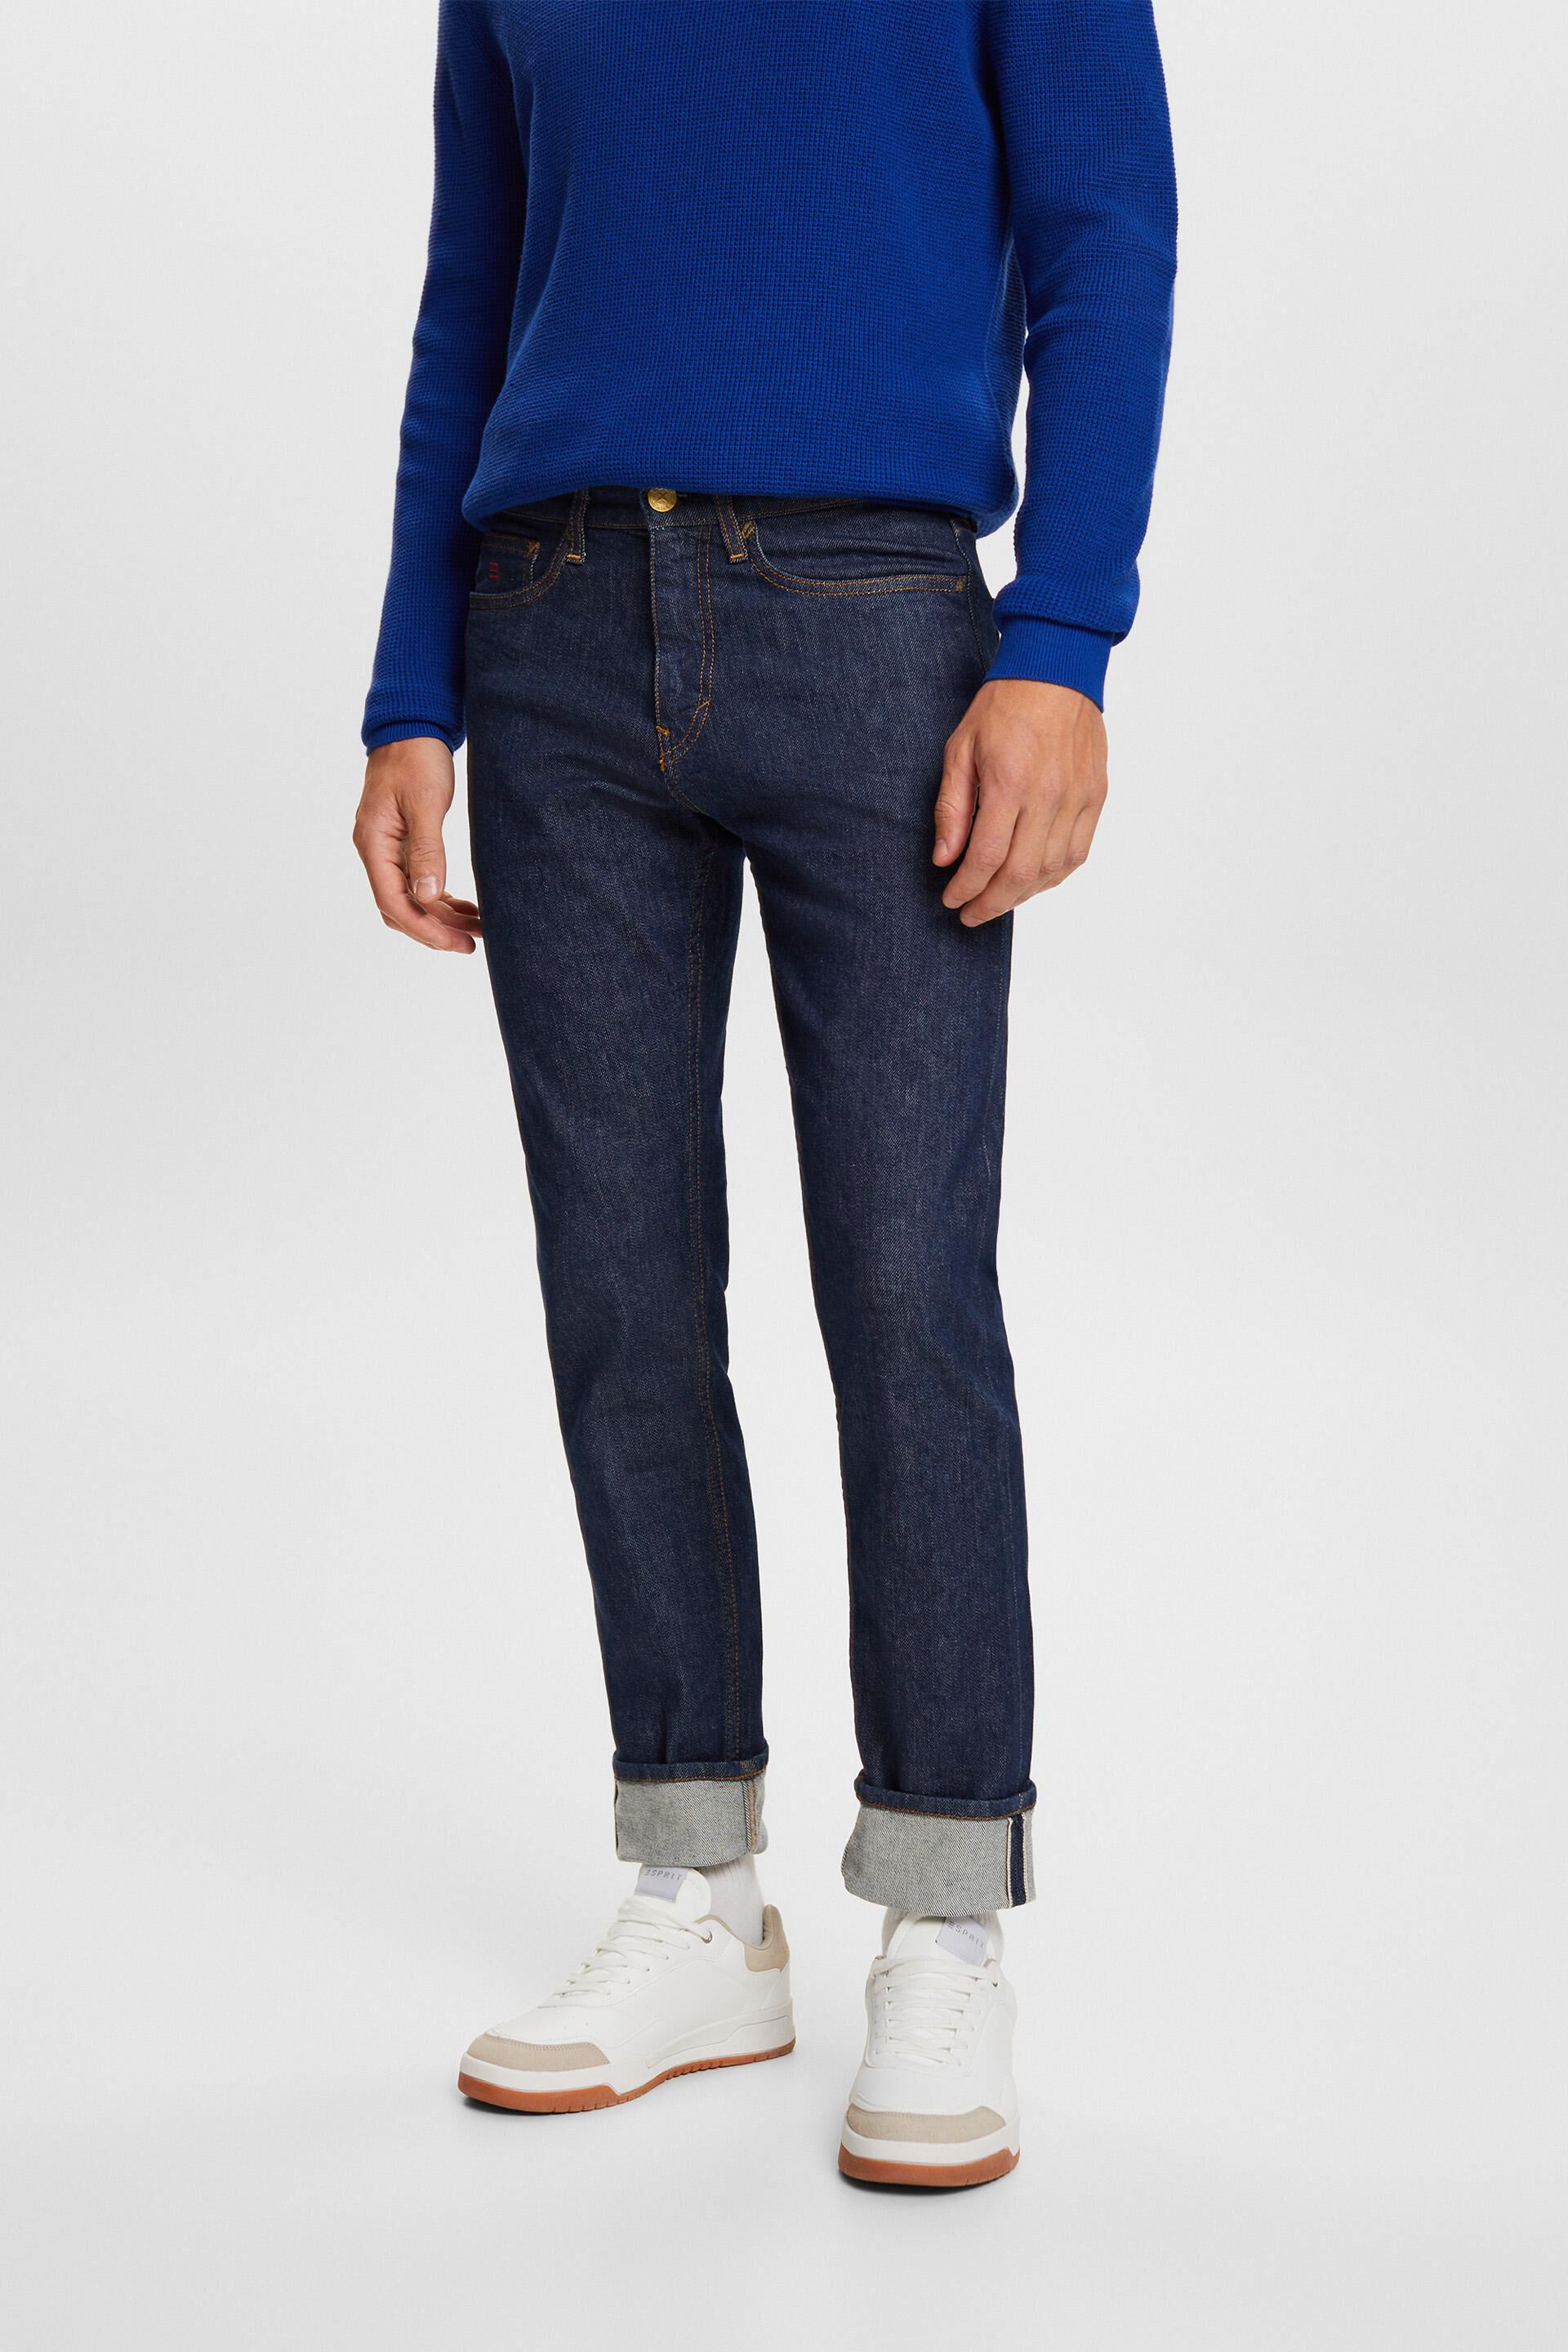 Esprit slim Premium jeans with fit selvedge